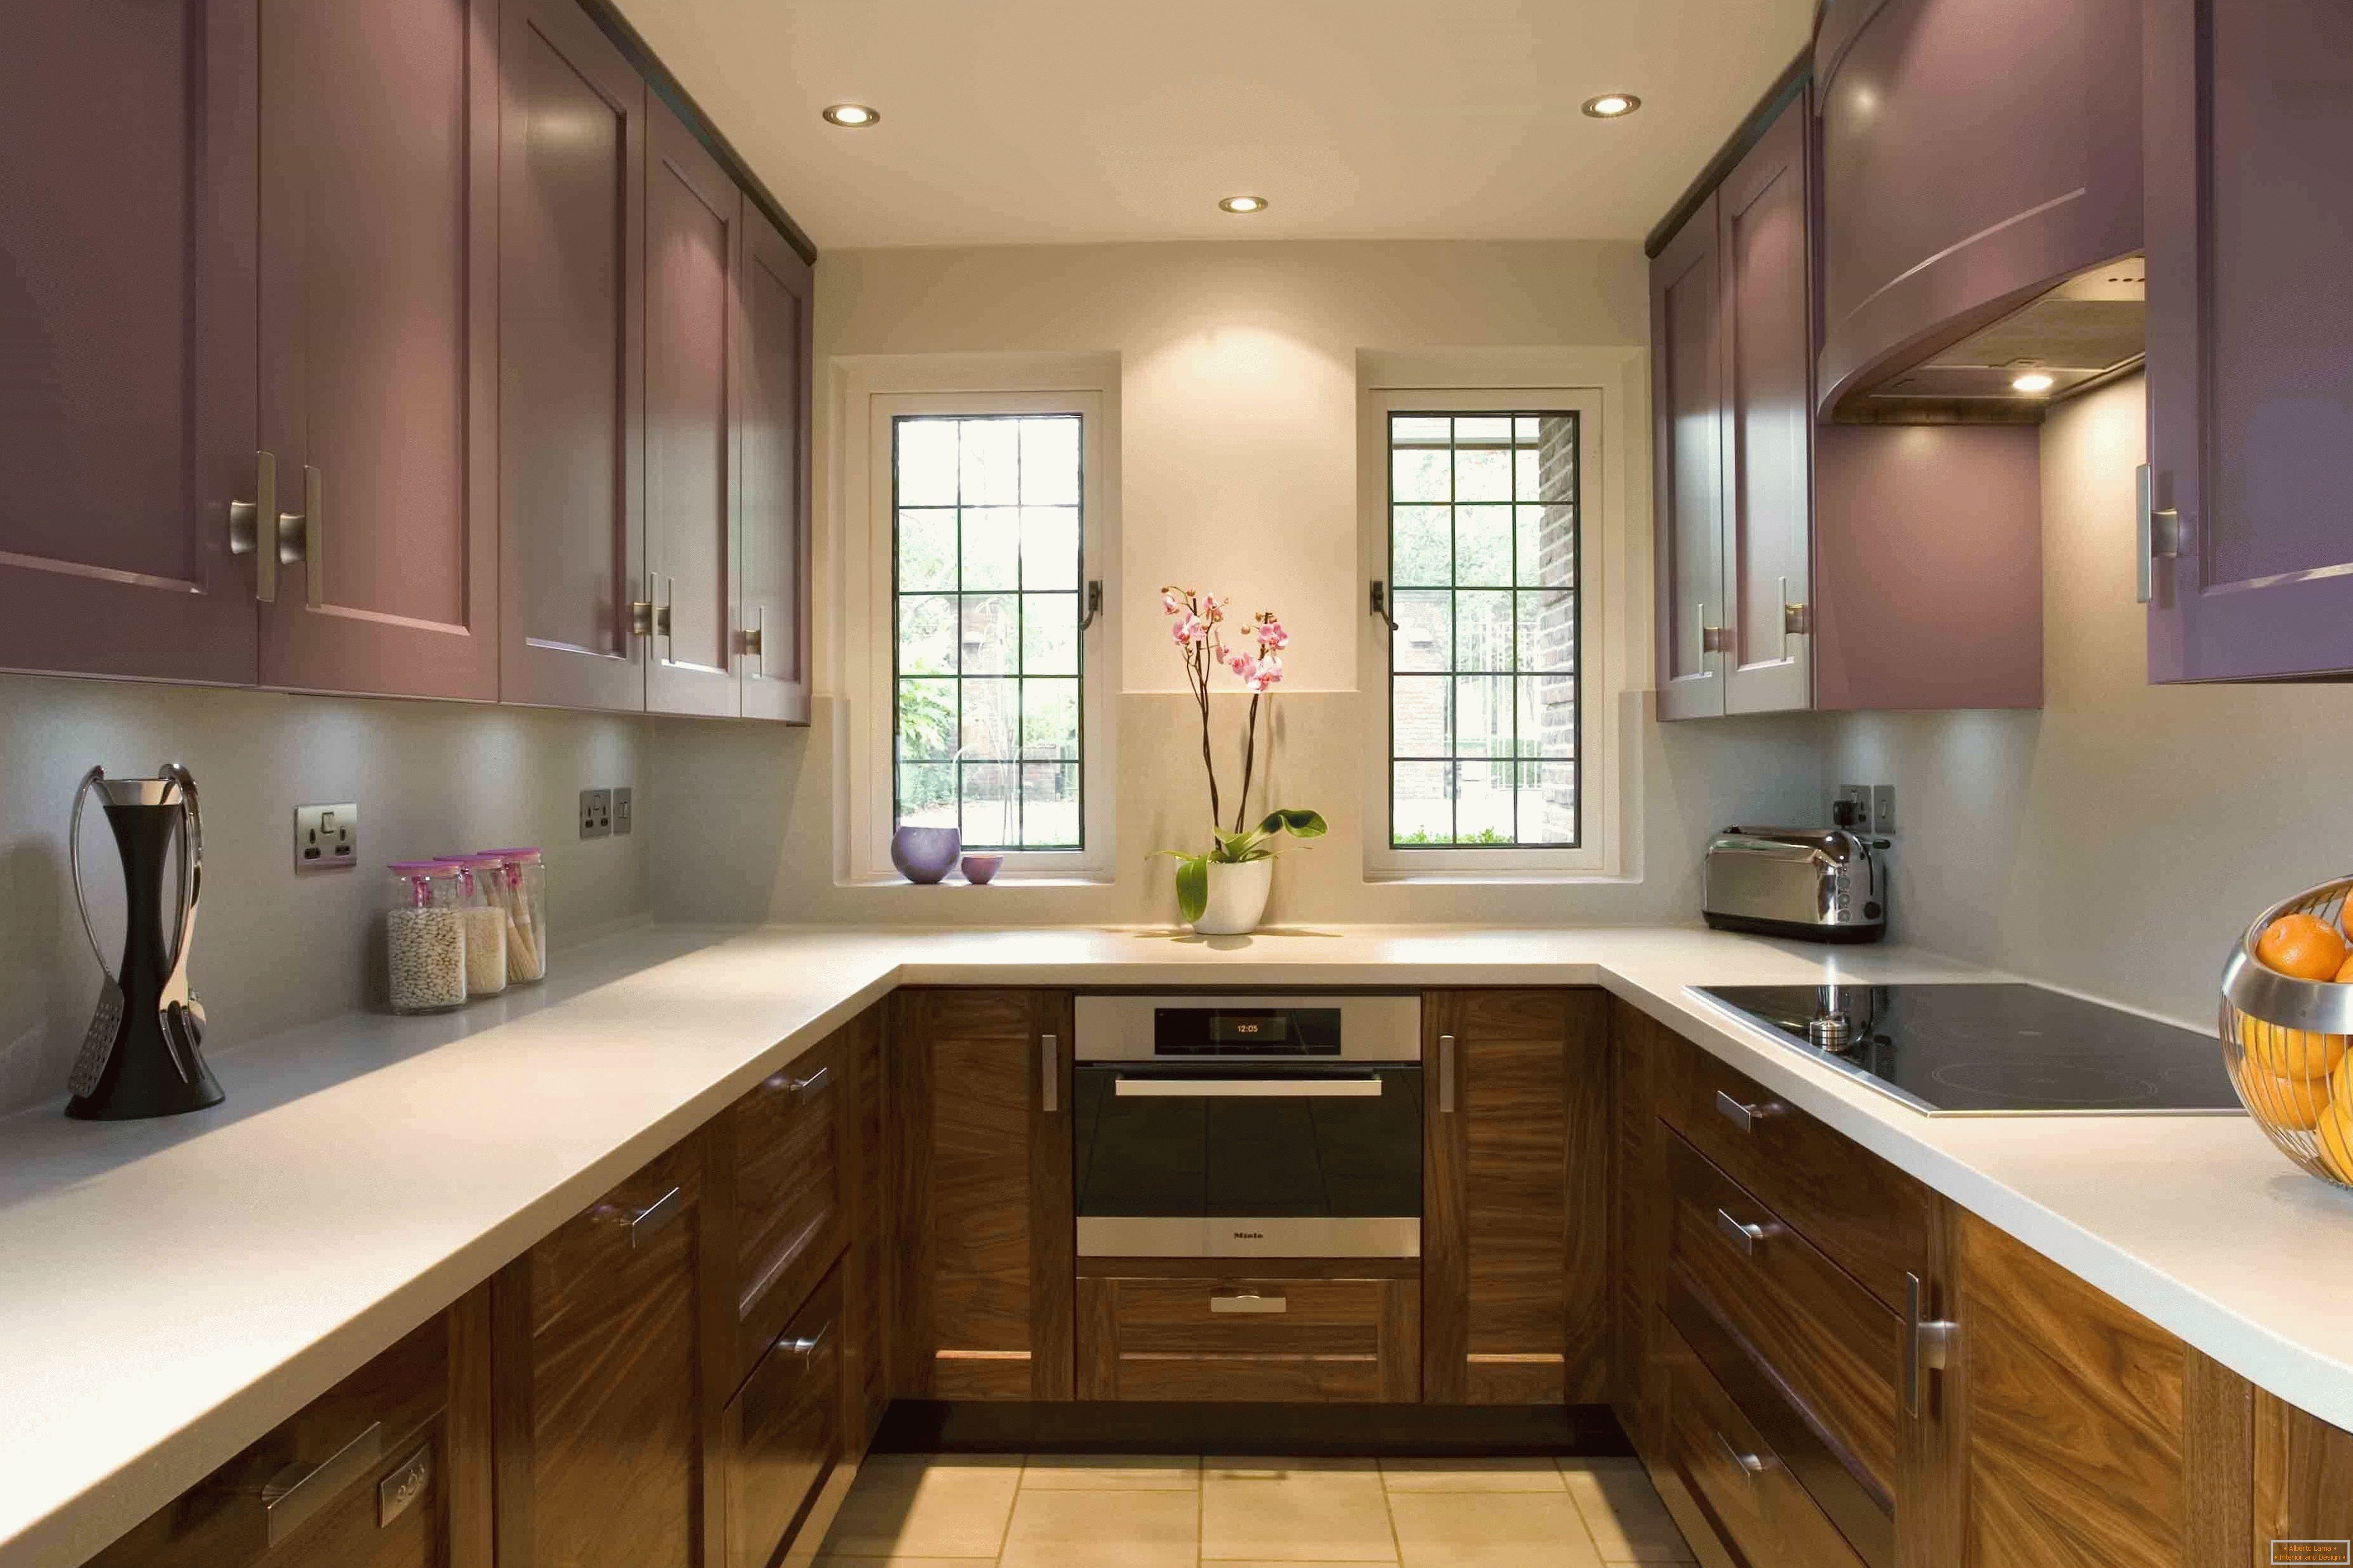 Kuchyňa v tvare U v fialovej v kombinácii s drevom